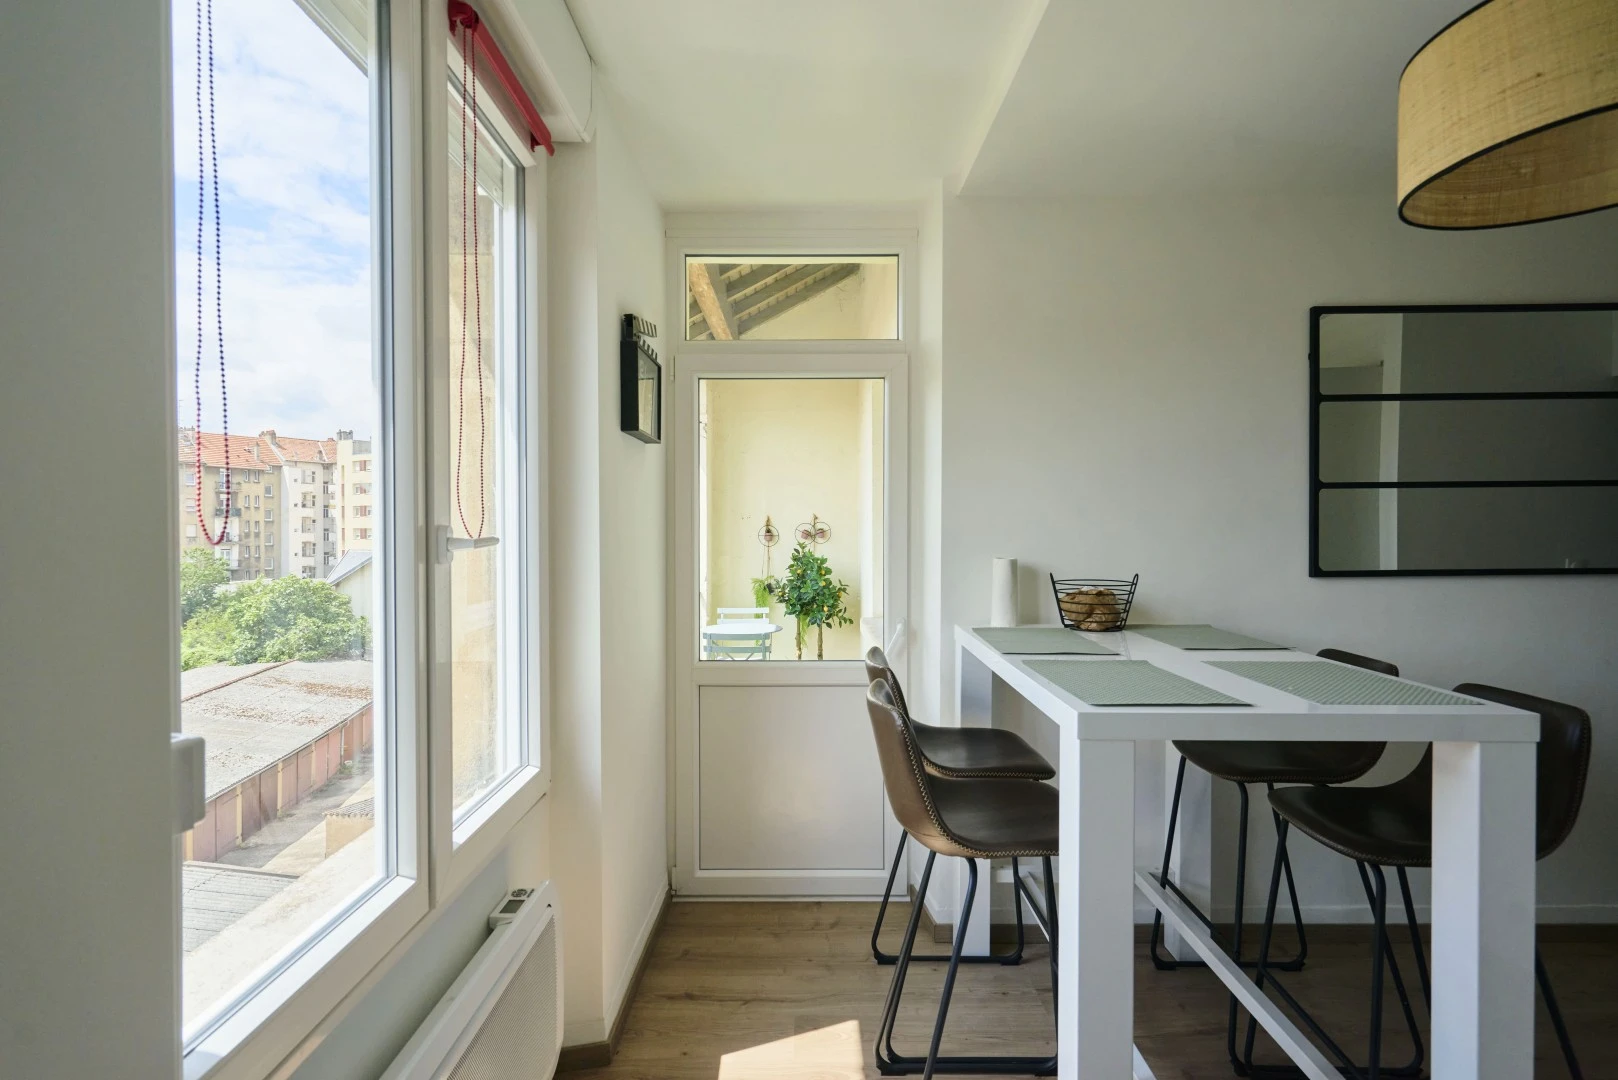 Alquiler de habitaciones por meses en Metz